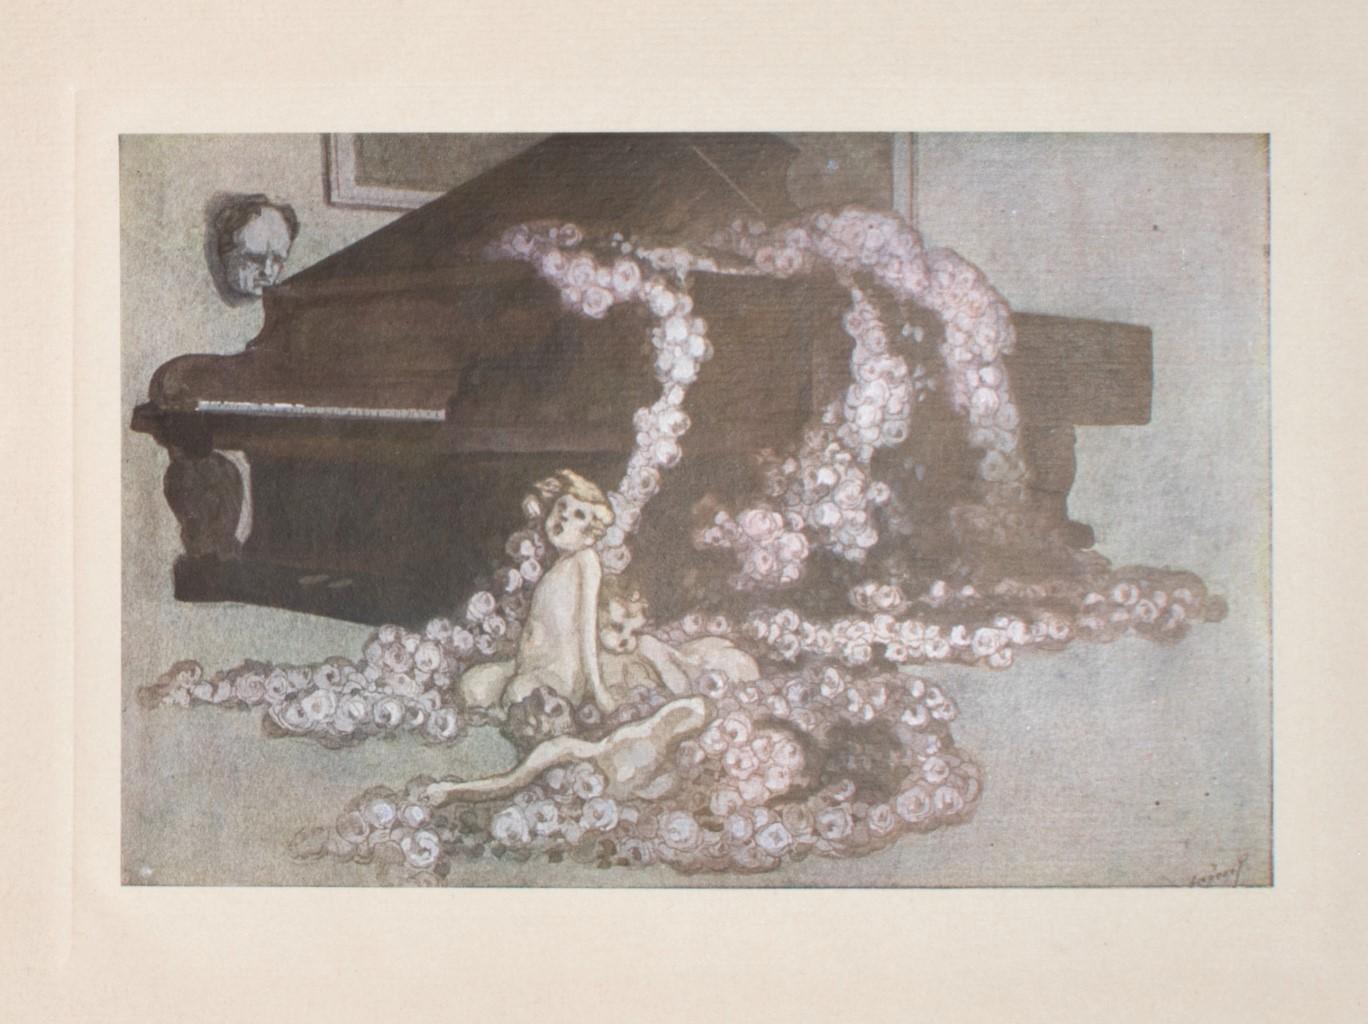 Rosenwalzer - Héliogravure by Franz von Bayros - 1920s